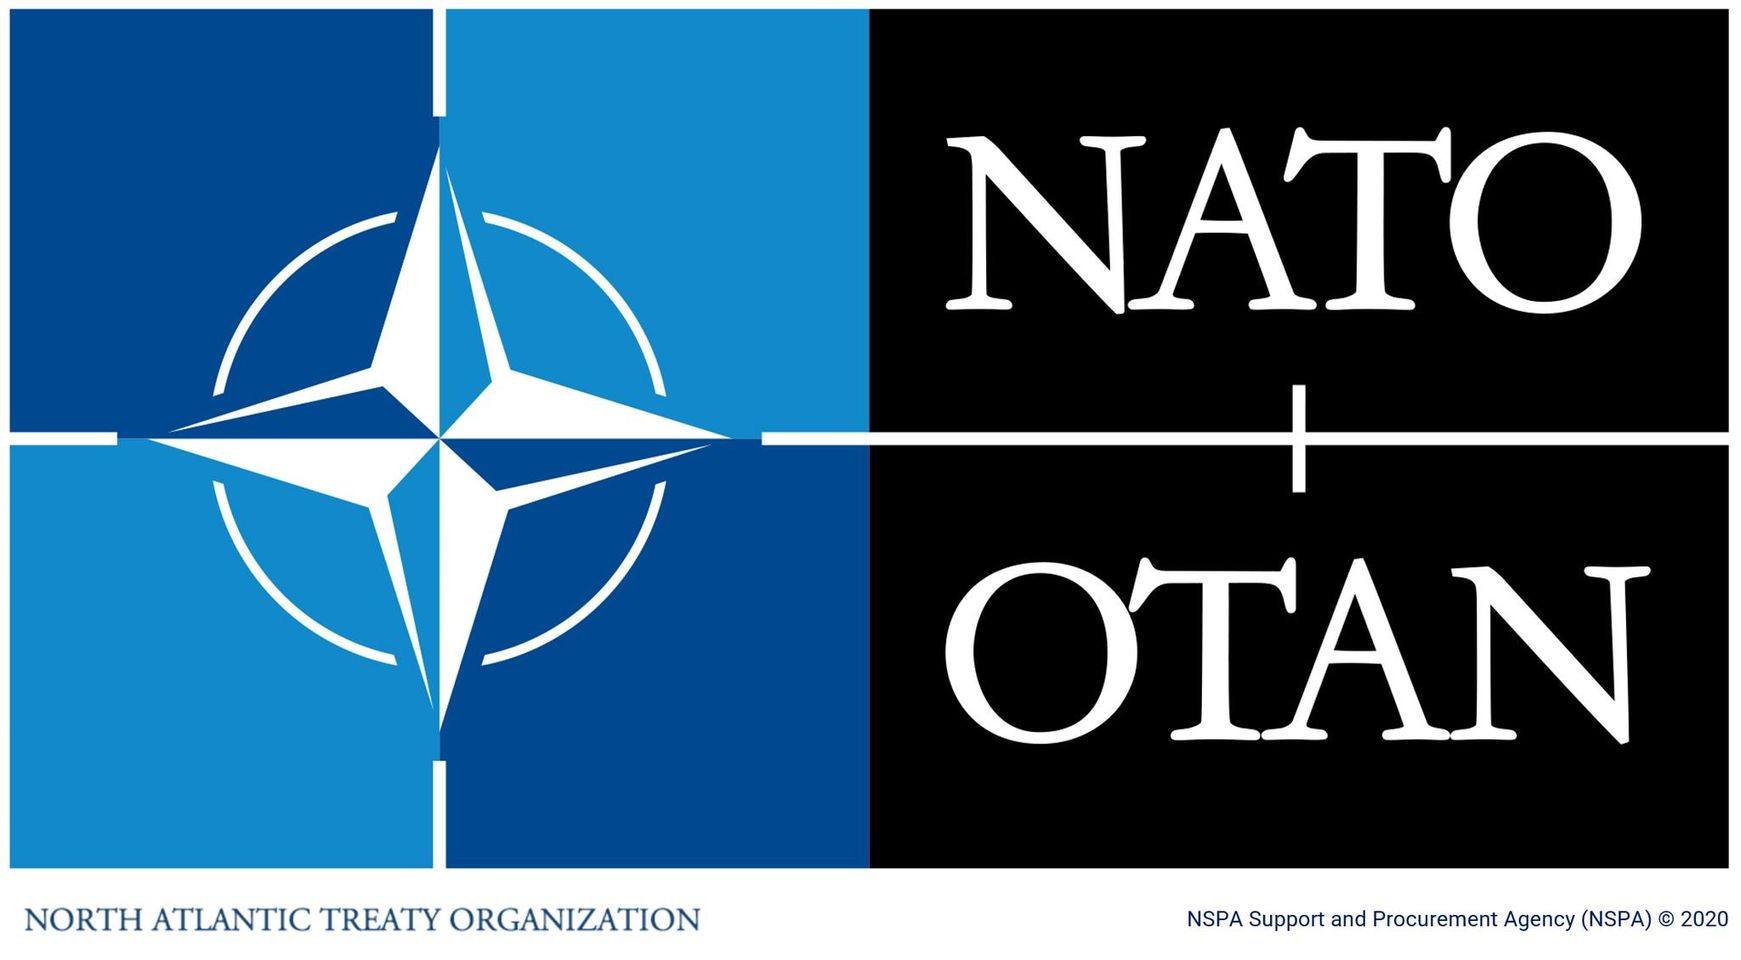 IΝΣΤΙΤΟΥΤΟ ΔΙΑΧΕΙΡΙΣΗΣ ΑΝΘΡΩΠΟΓΕΝΩΝ & ΦΥΣΙΚΩΝ ΚΑΤΑΣΤΡΟΦΩΝ καταχωρήθηκε στη DATABASE της NSPA/ΝΑΤΟ (NATO Support and Procurement Agency) και απέκτησε Νατοϊκό κωδικό.